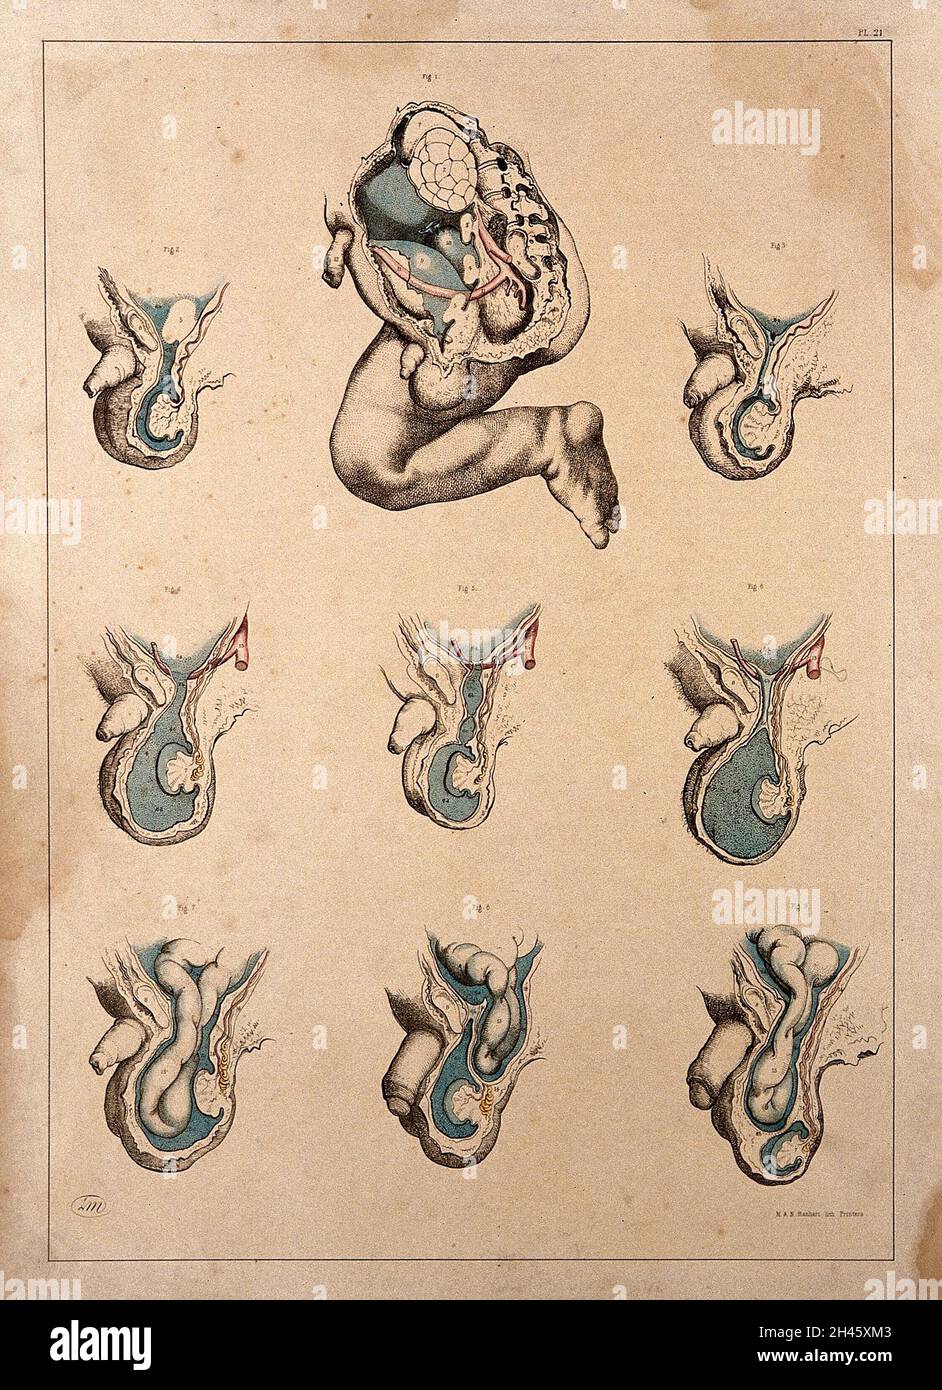 Hernies congénitales et infantiles : neuf chiffres.Lithographie colorée par J. Maclise, 1851. Banque D'Images